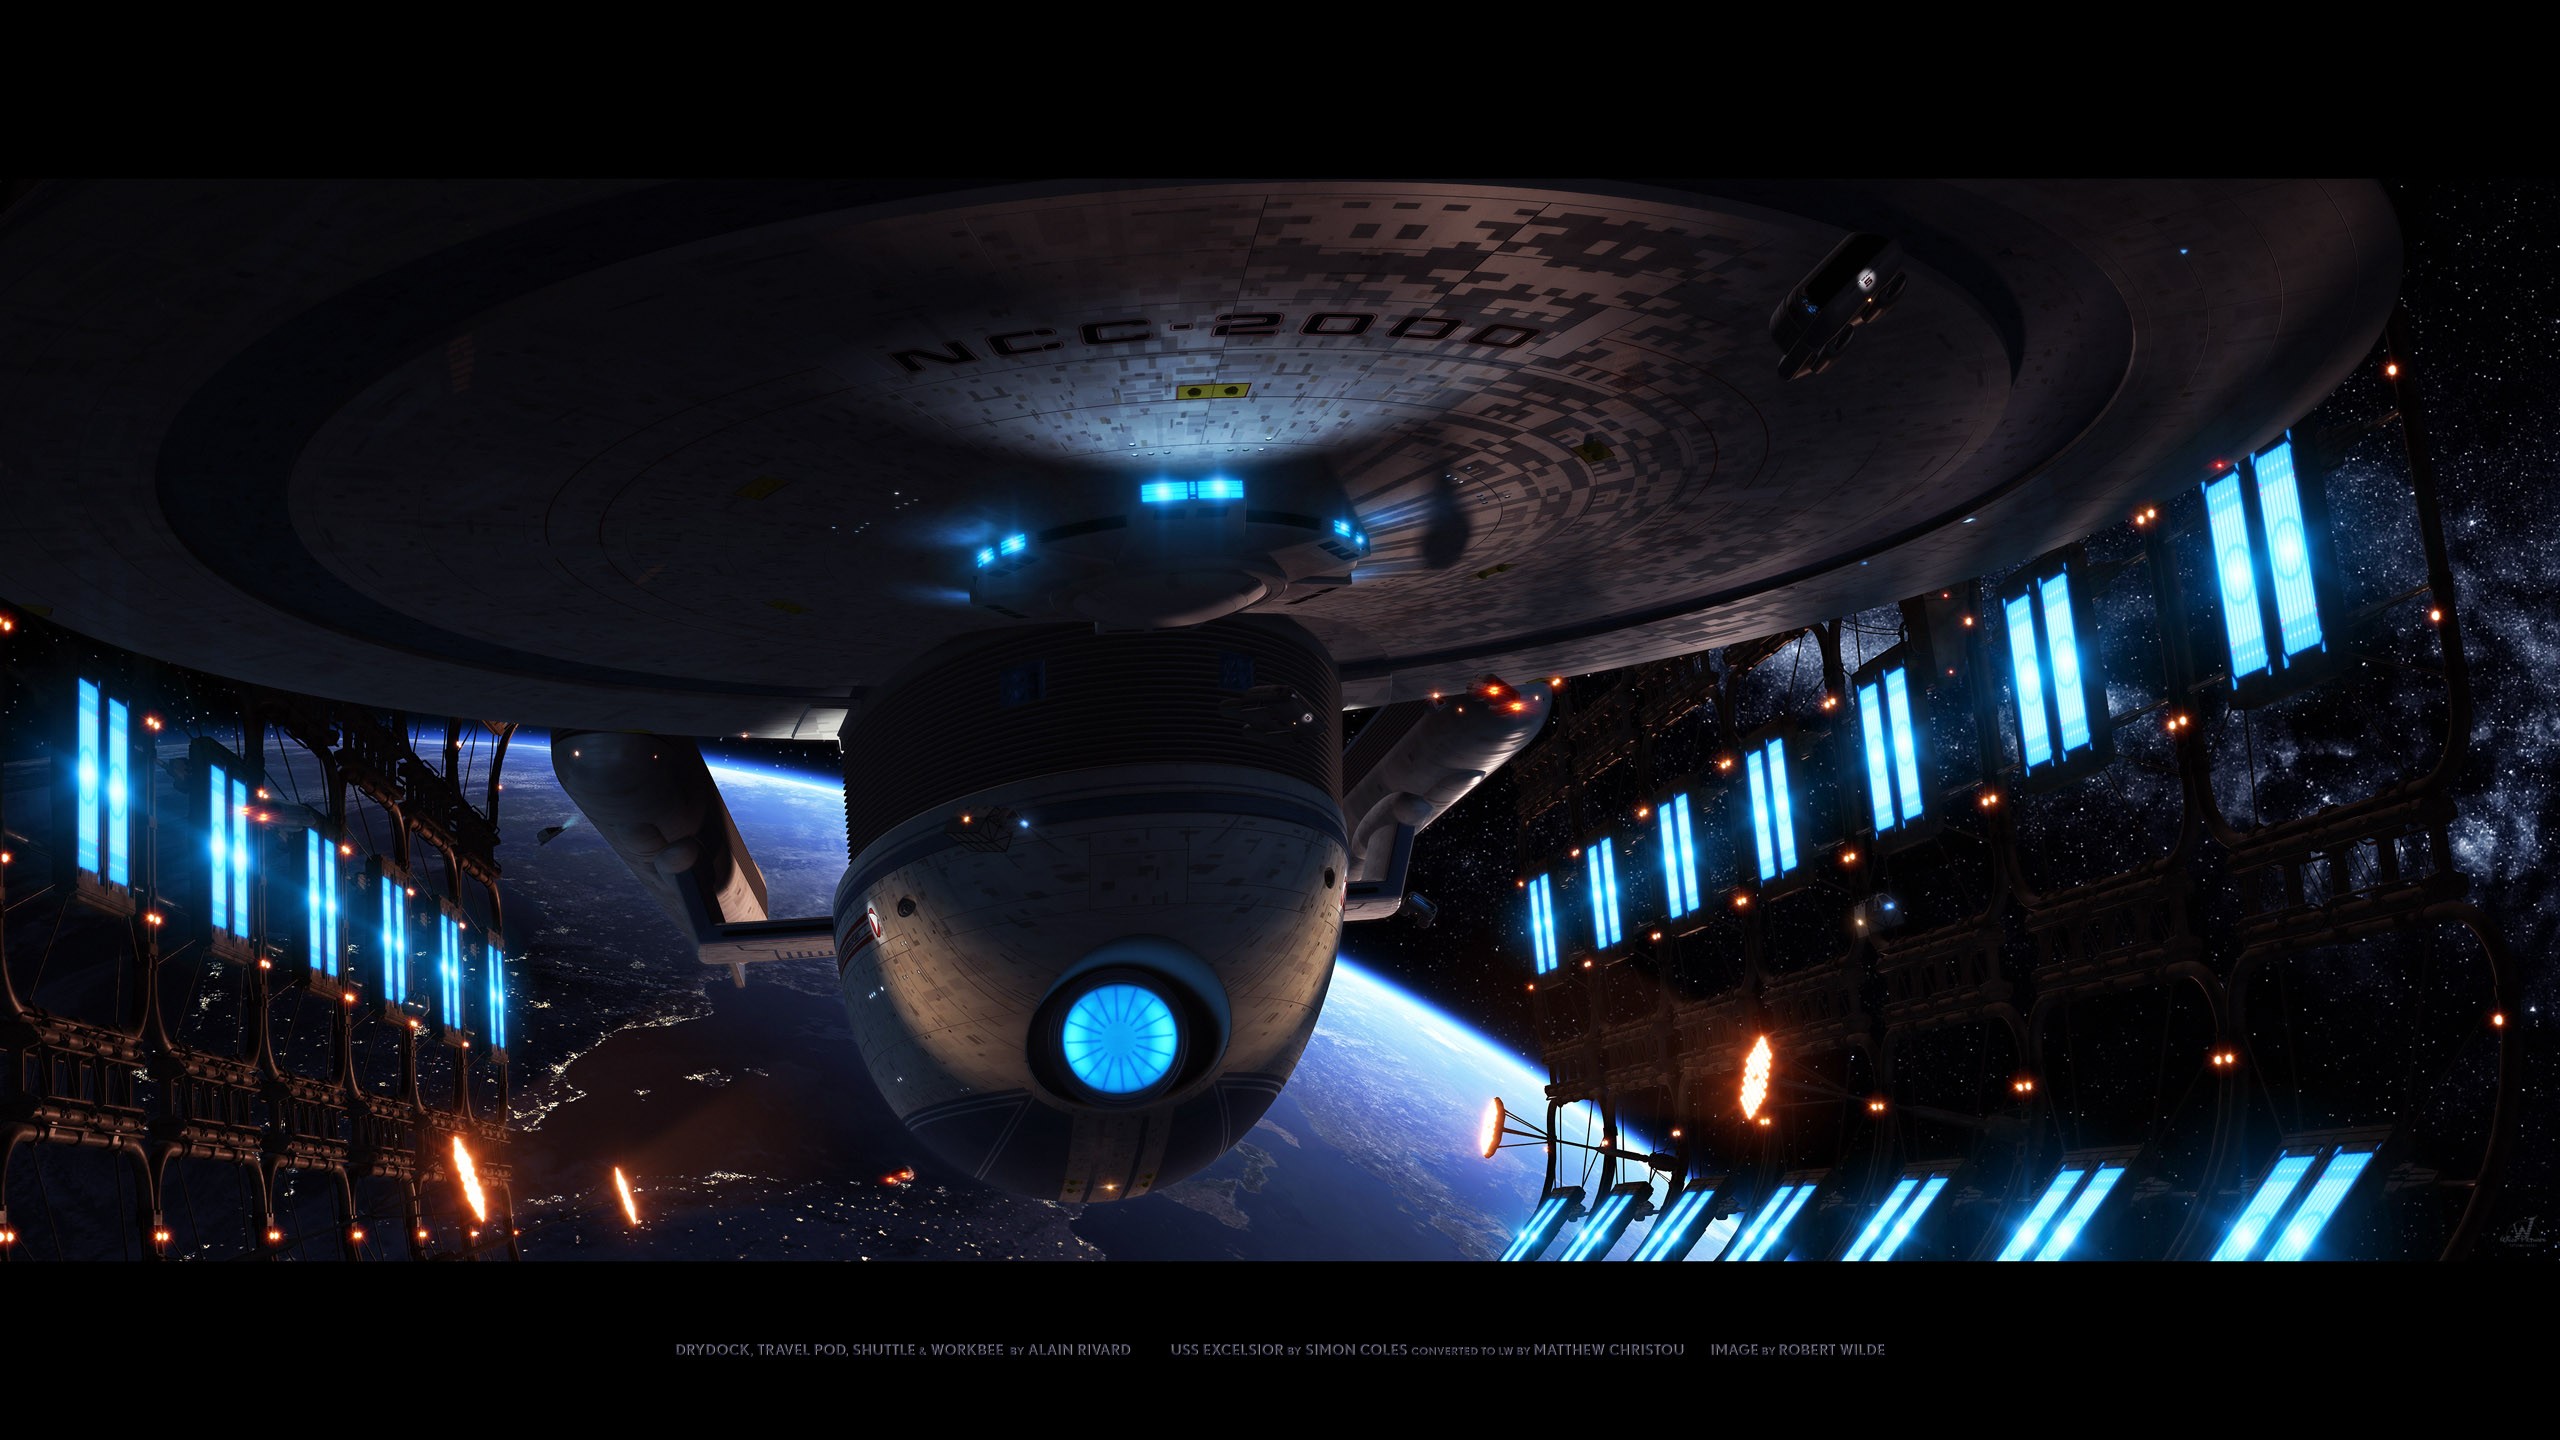 Star Trek Wallpaper Enterprise Uss Excelsior